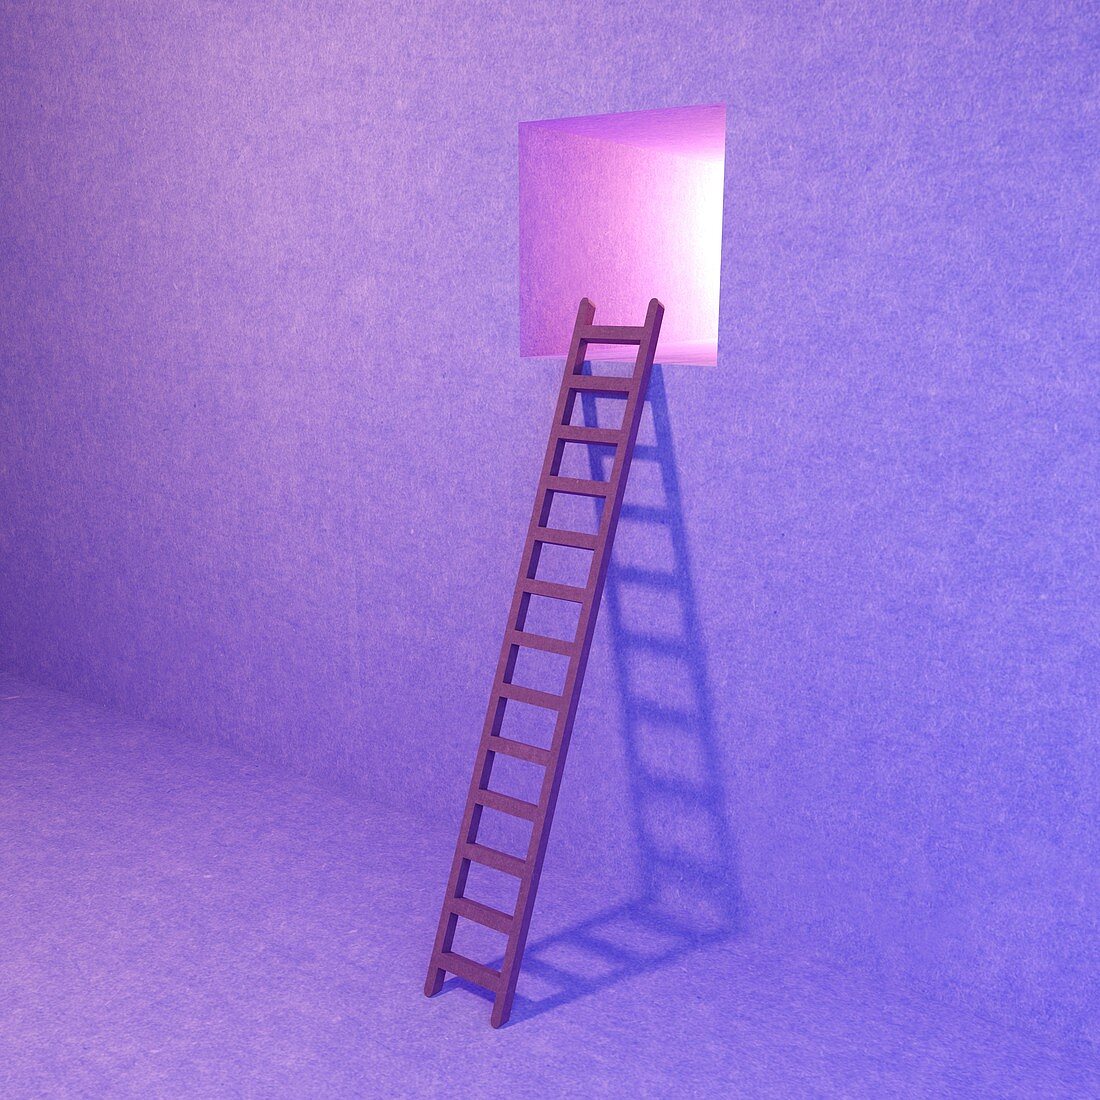 Ladder to window, artwork